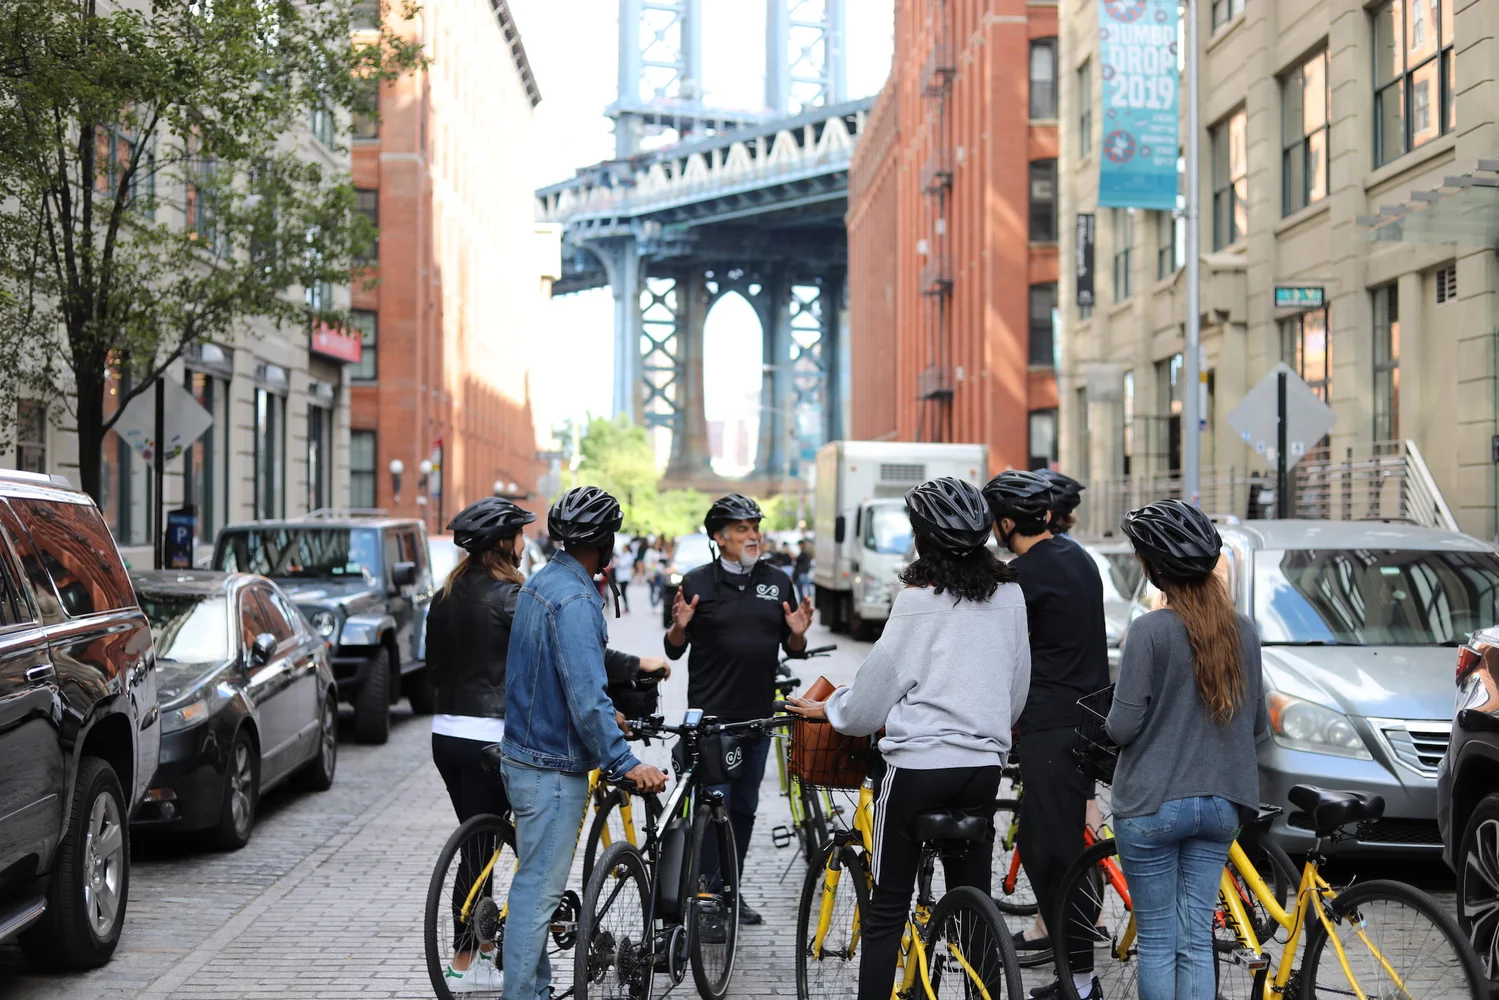 Brooklyn Bridge 2-Hour Guided Bike Tour